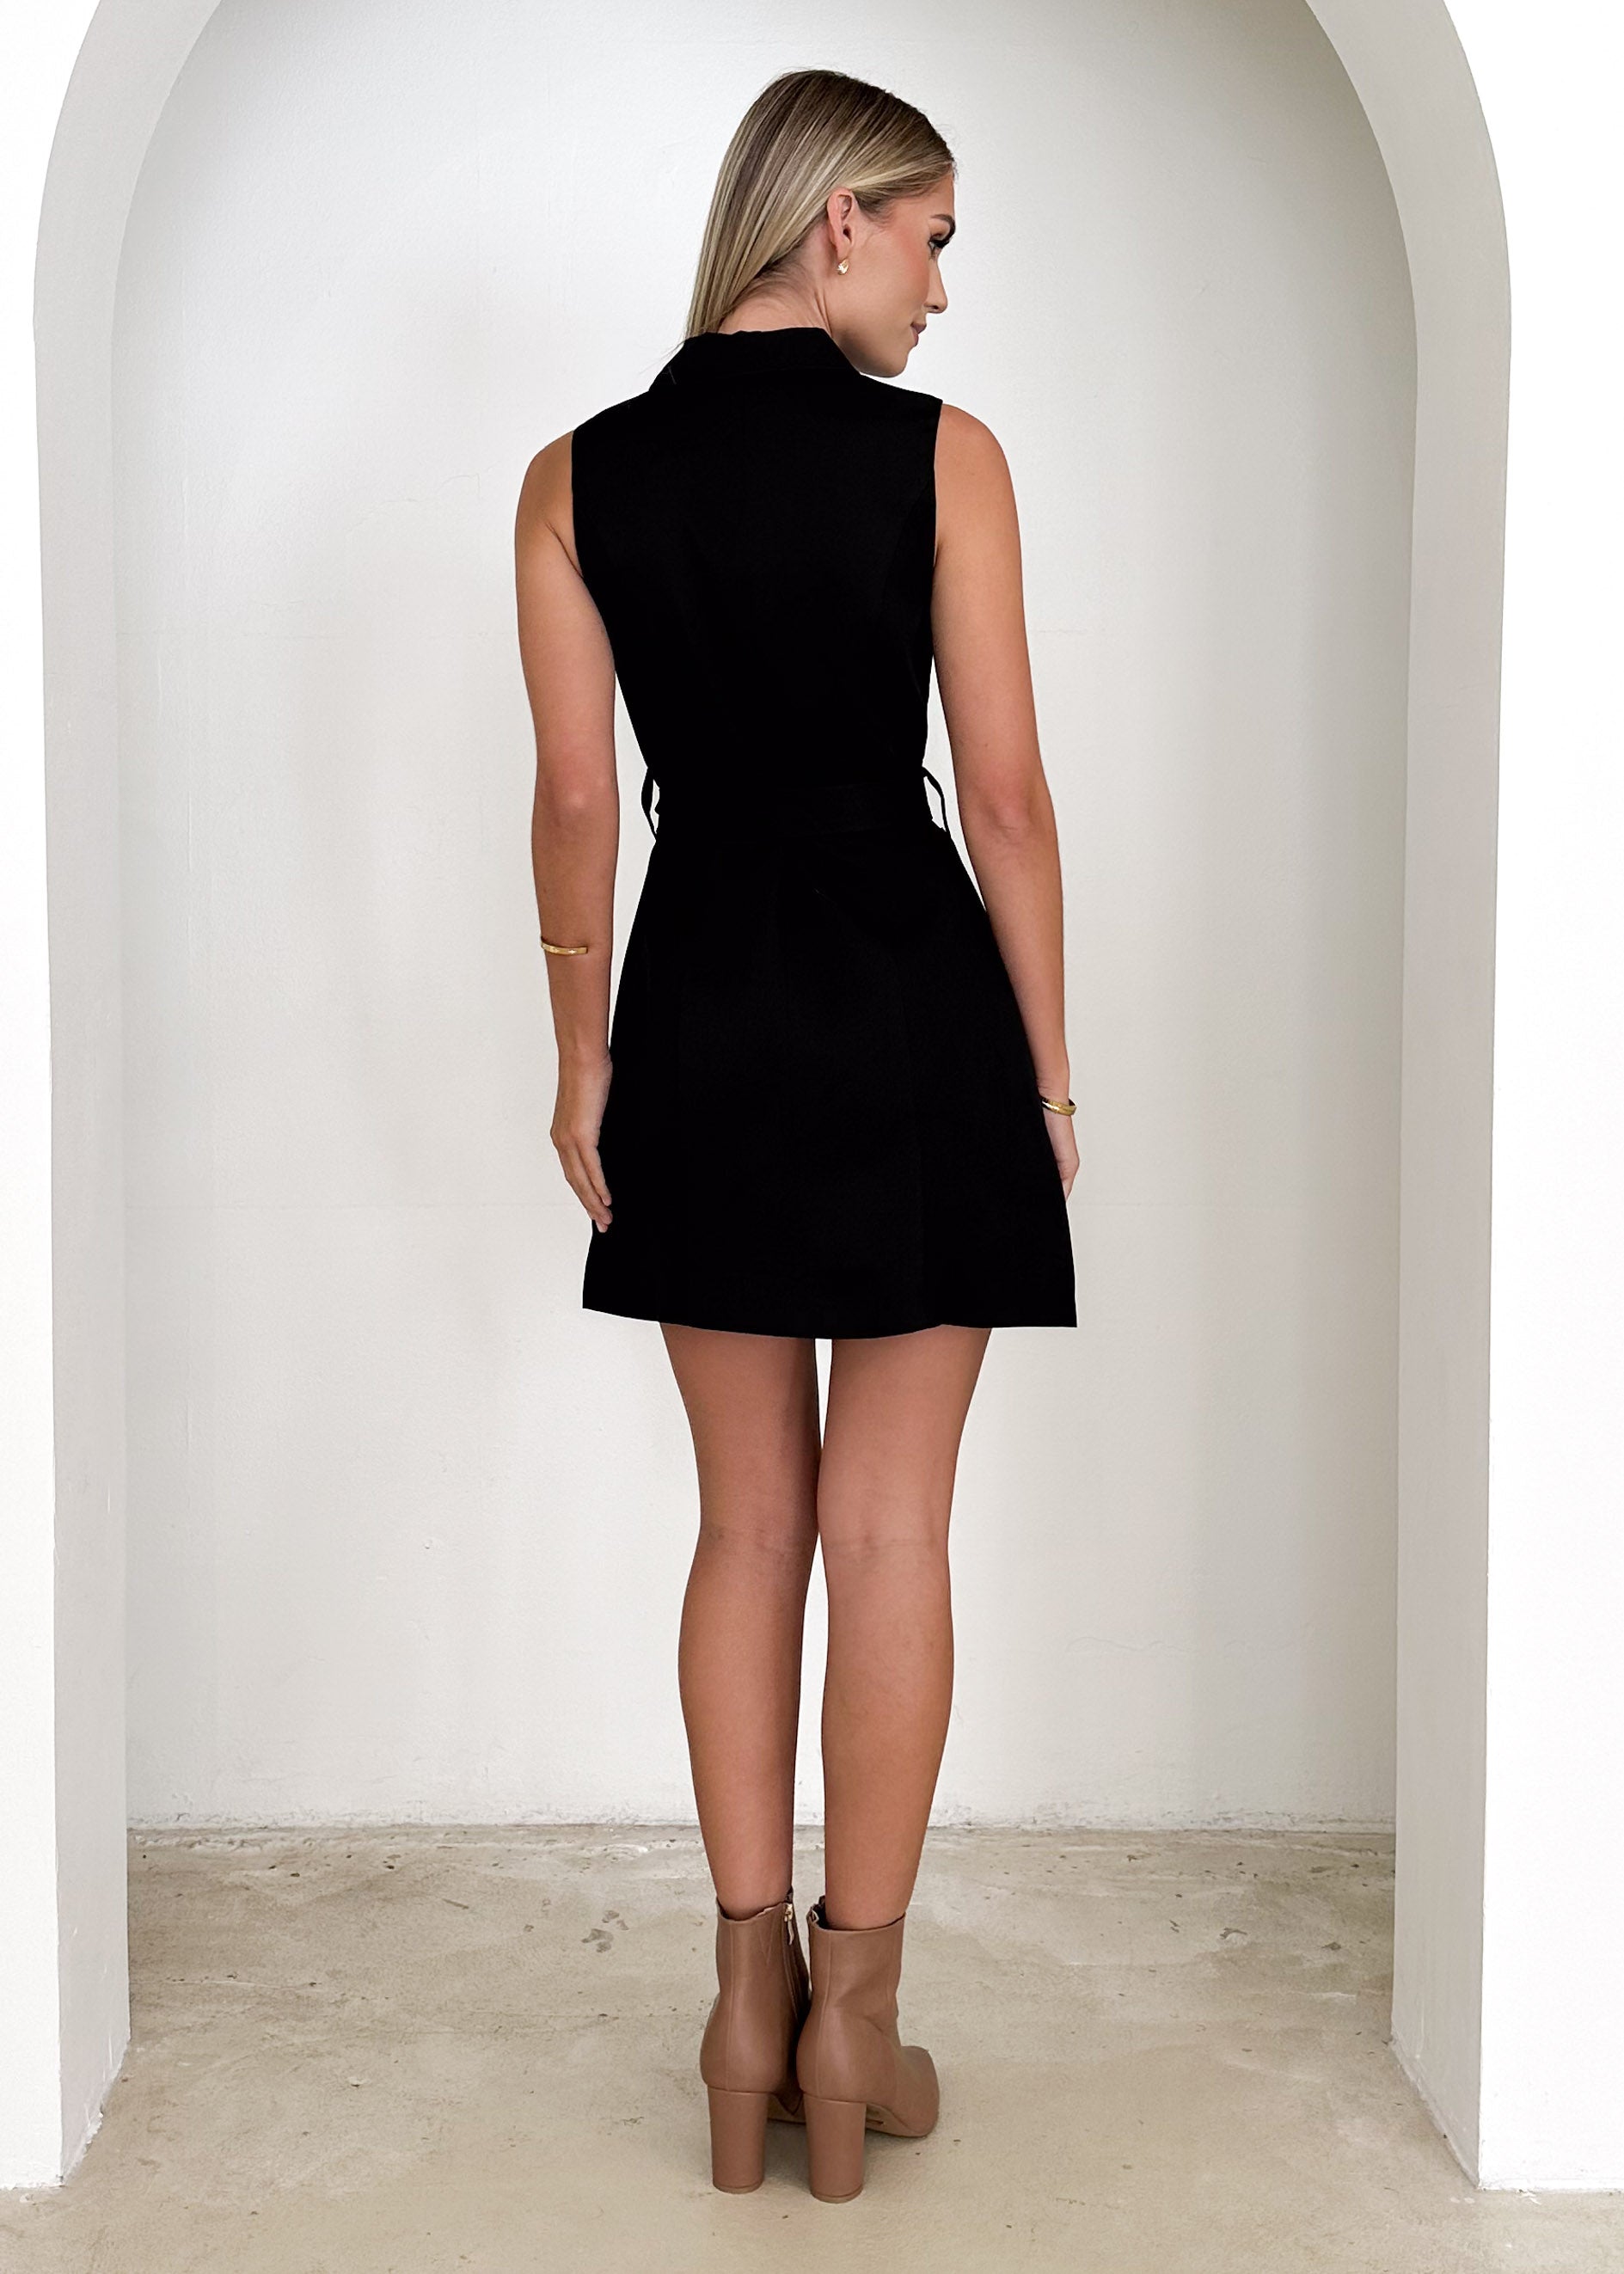 Wynla Blazer Dress - Black